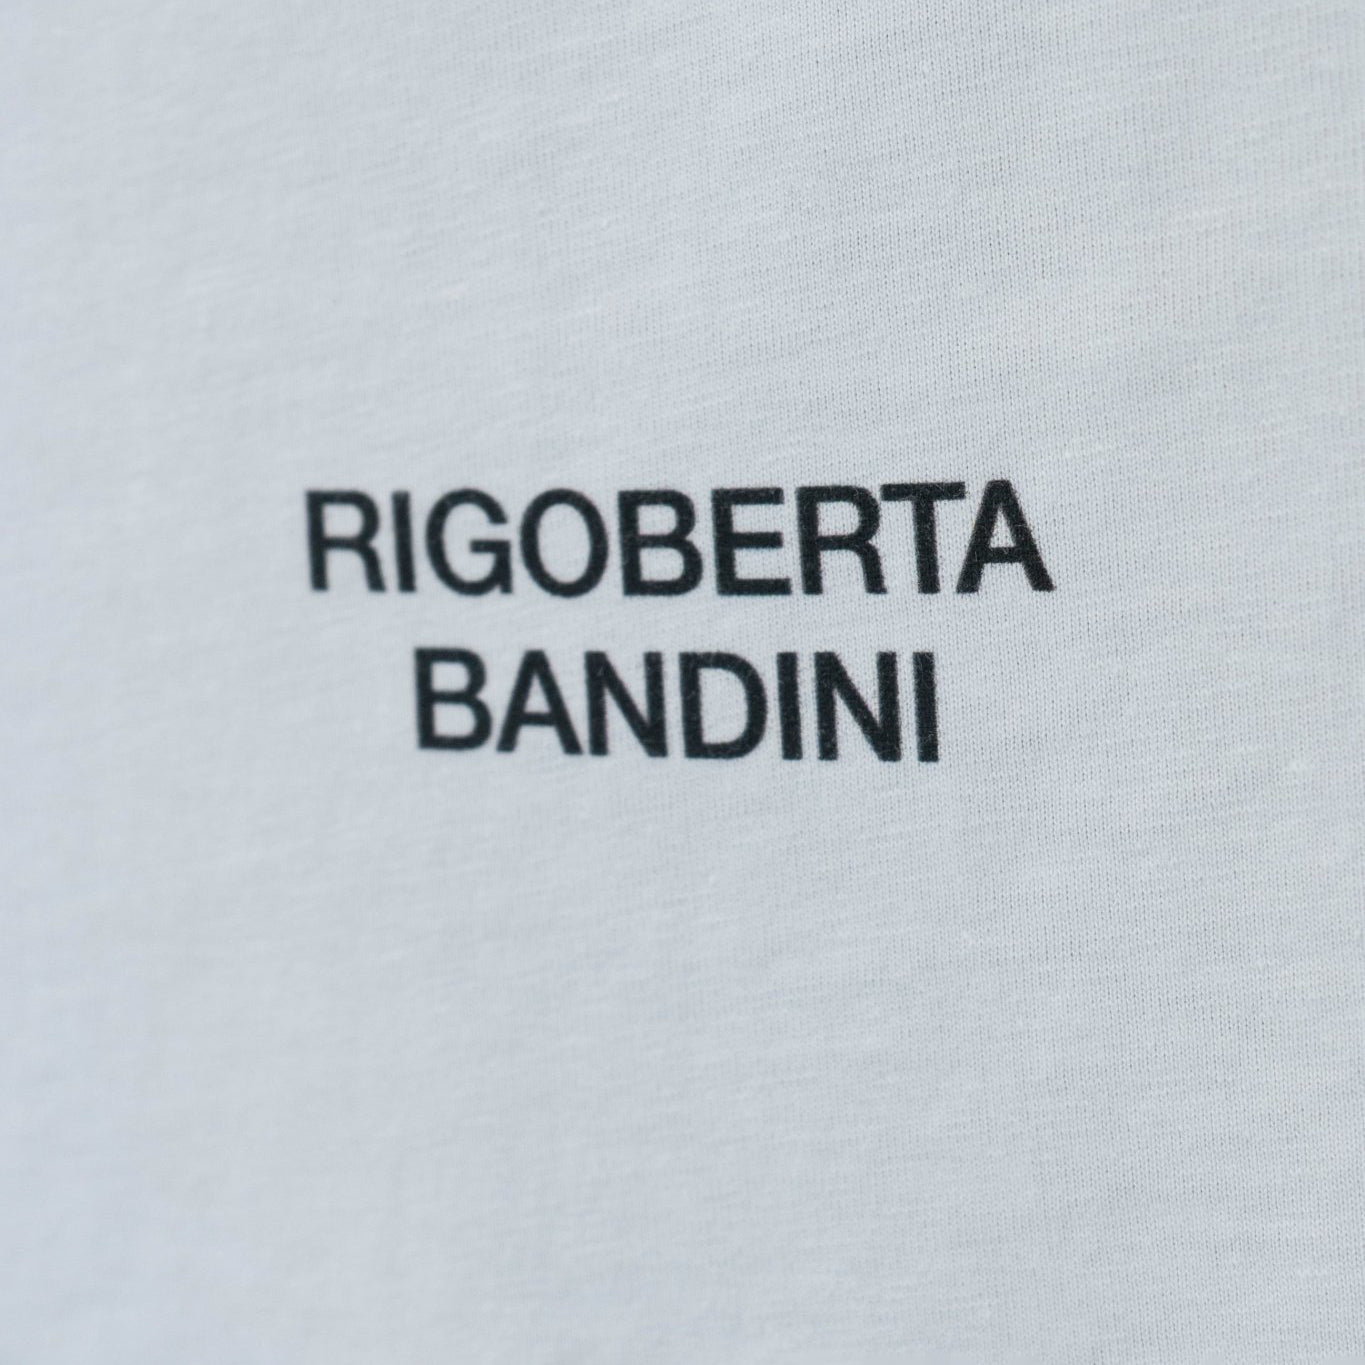 Rigoberta Bandini, Camiseta Rigoberta Bandini